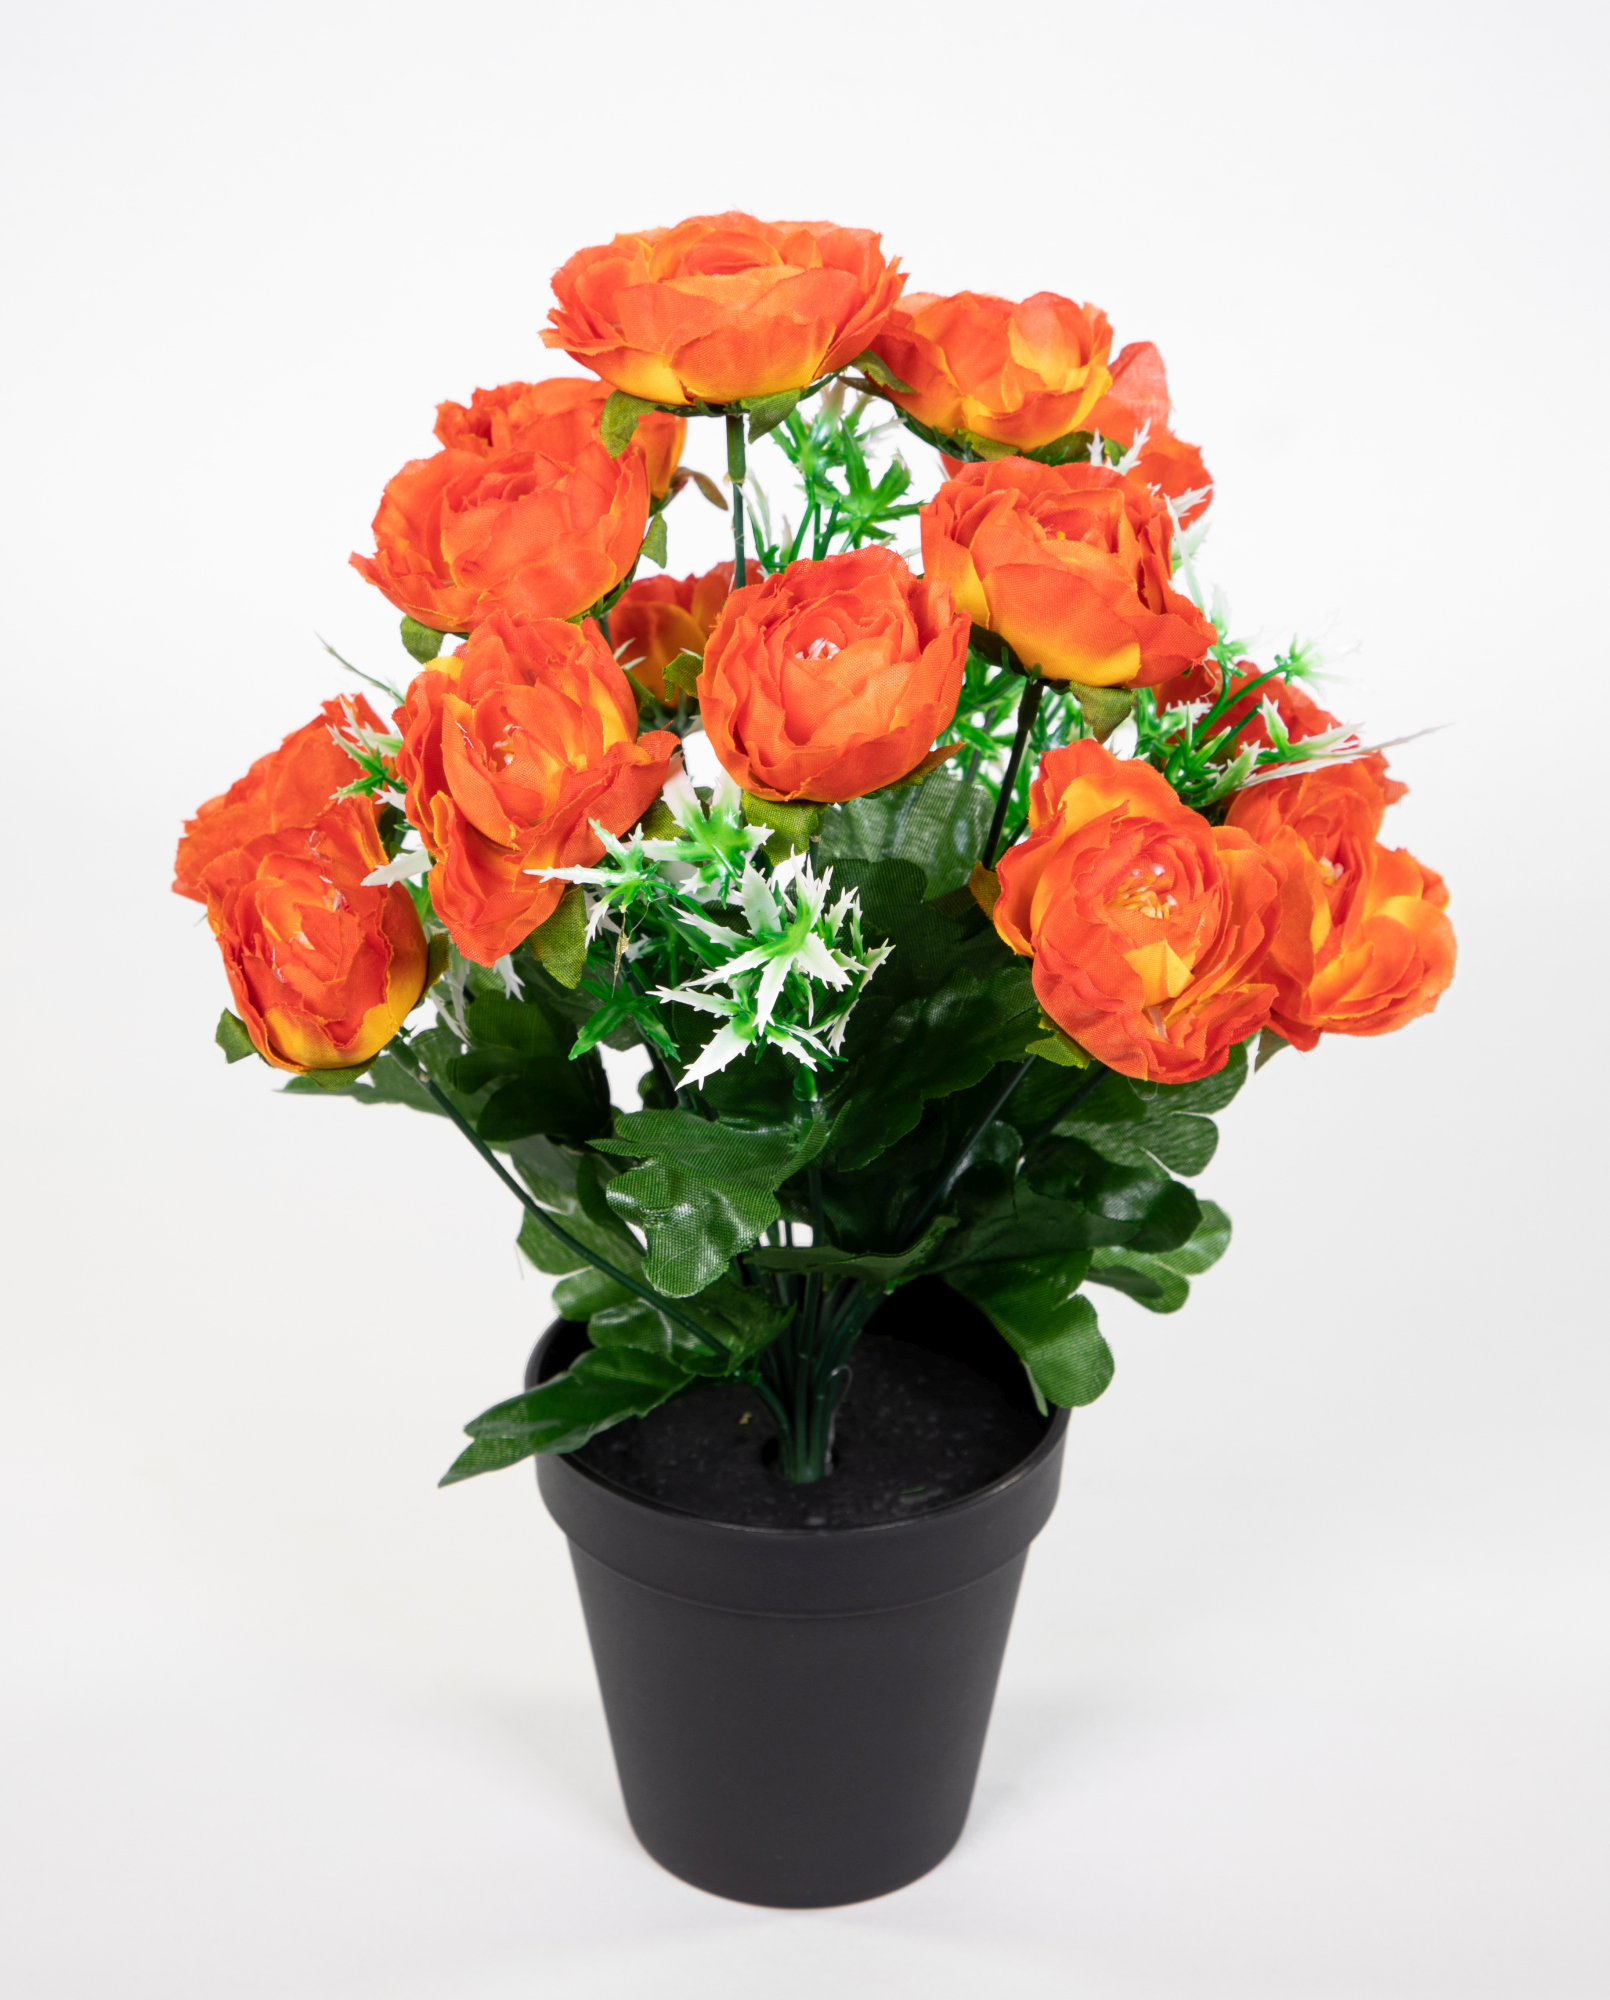 künstliche Kunstblumen im orange 34cm Ranunkelbusch Ranunkel Blumen Kunstpflanzen JA Topf